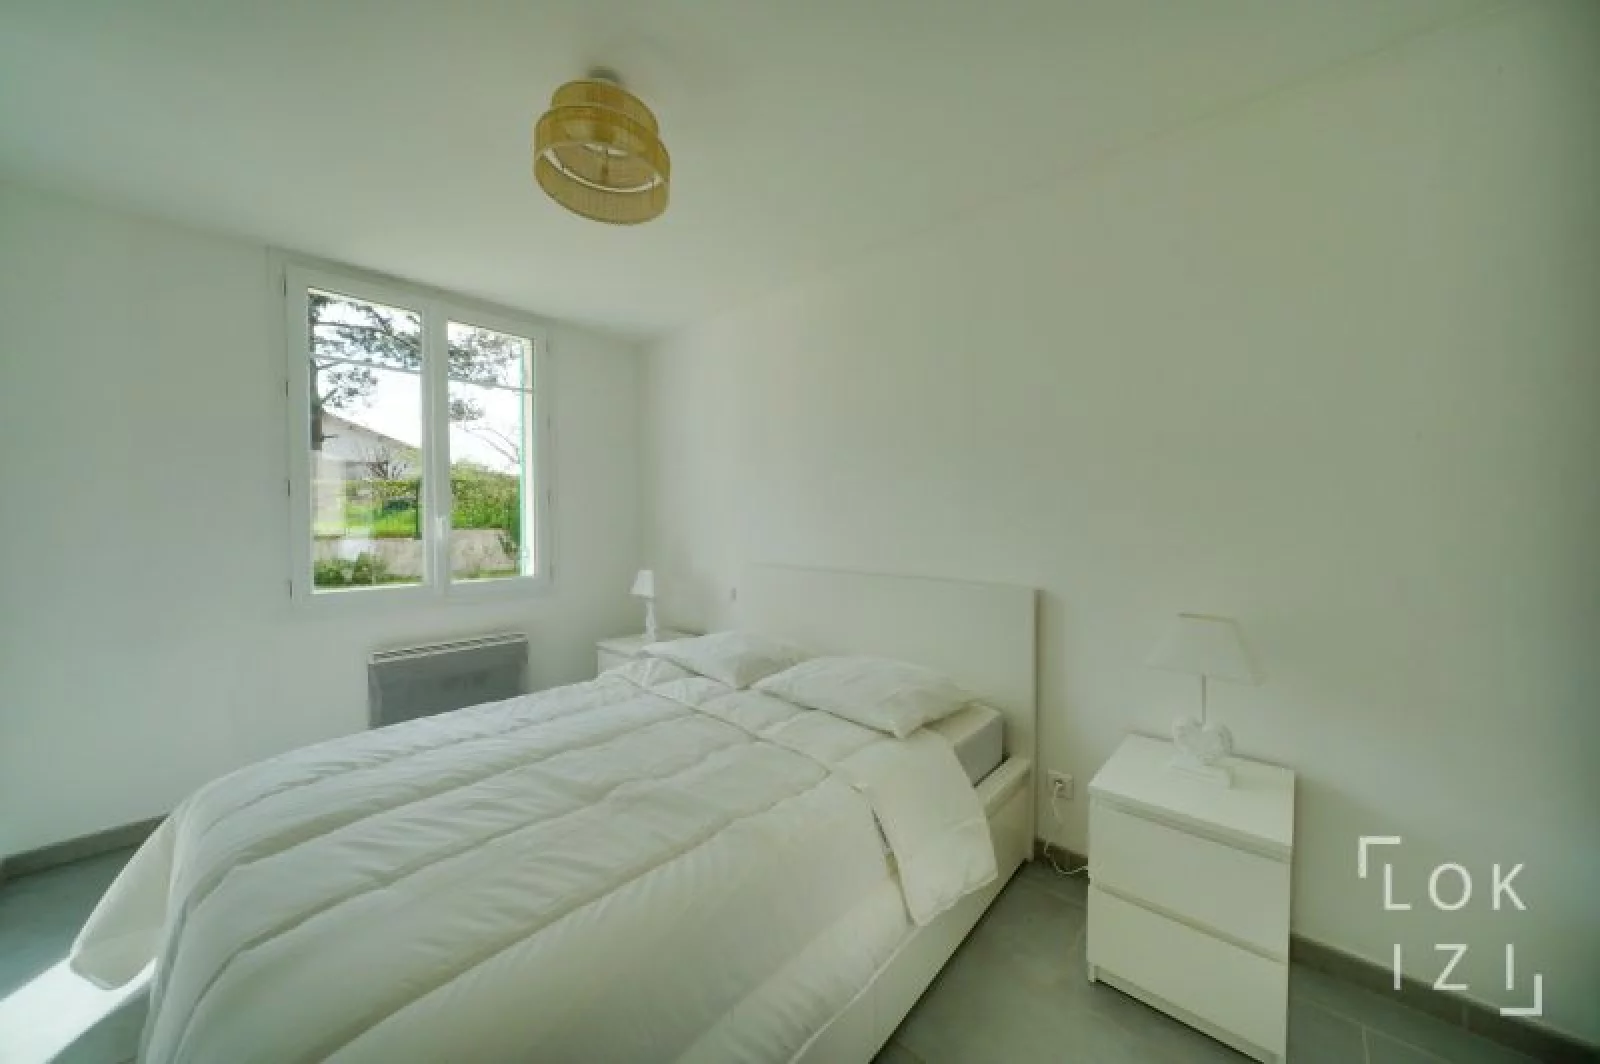 Location maison meublée 4 pièces de 116m² (Bordeaux - Blanquefort)